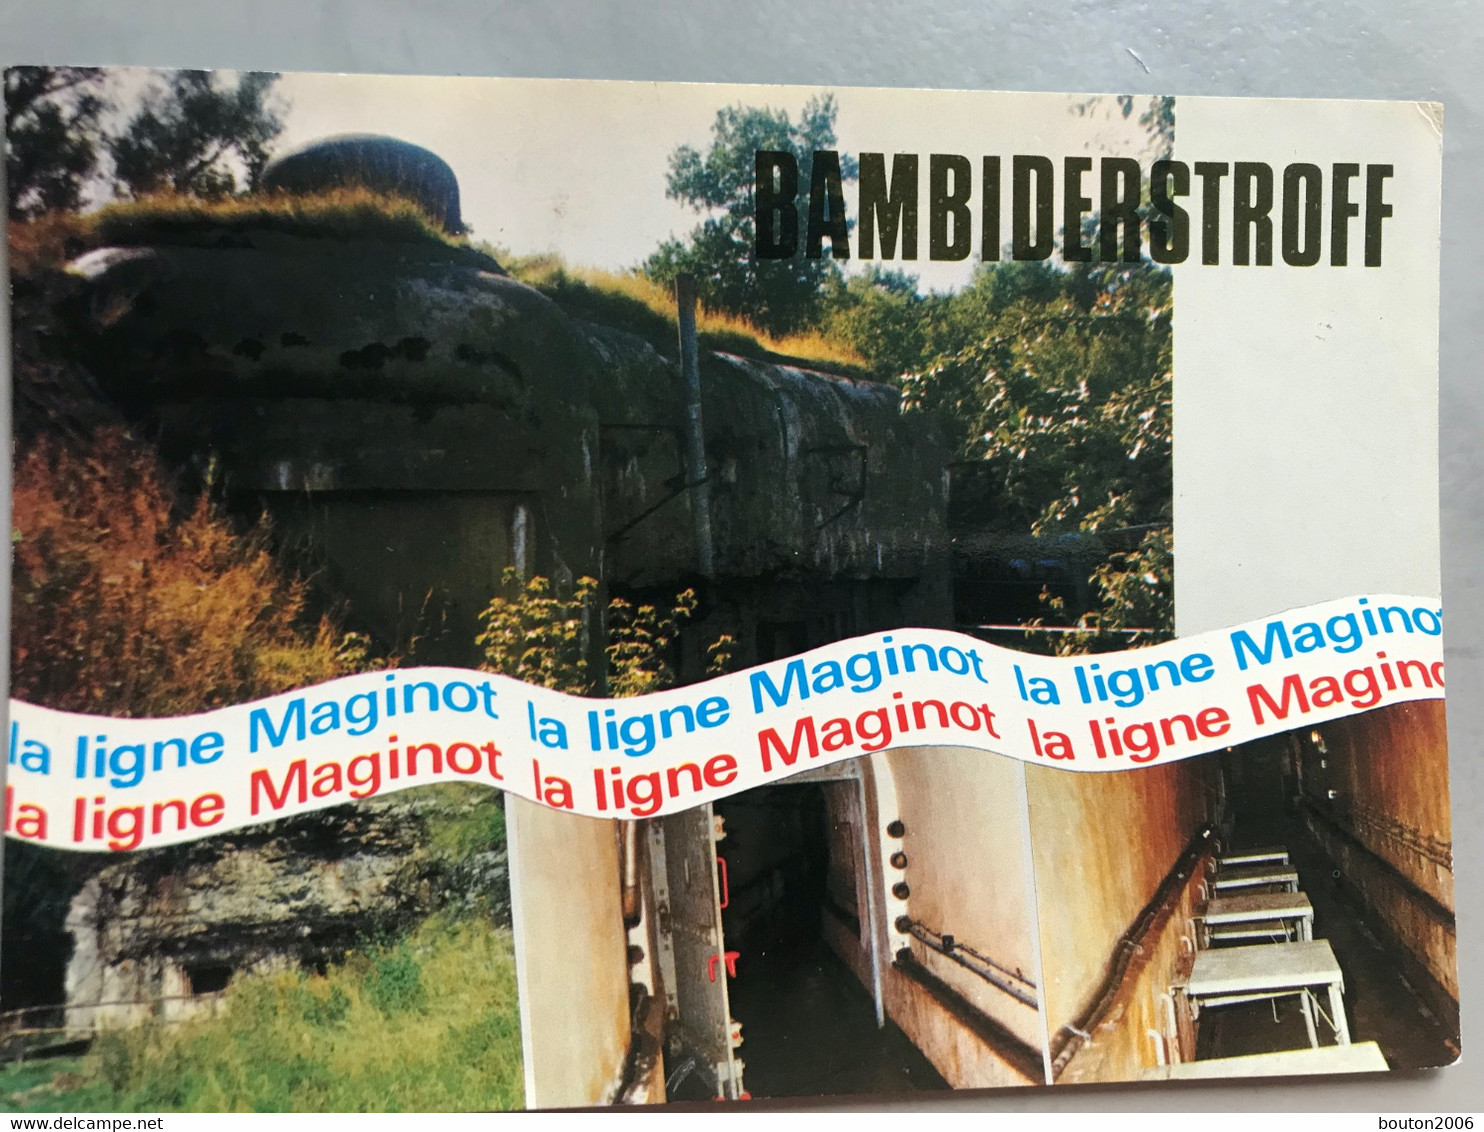 Bambiderstroff Ligne Maginot Bambesch Bunker - Faulquemont